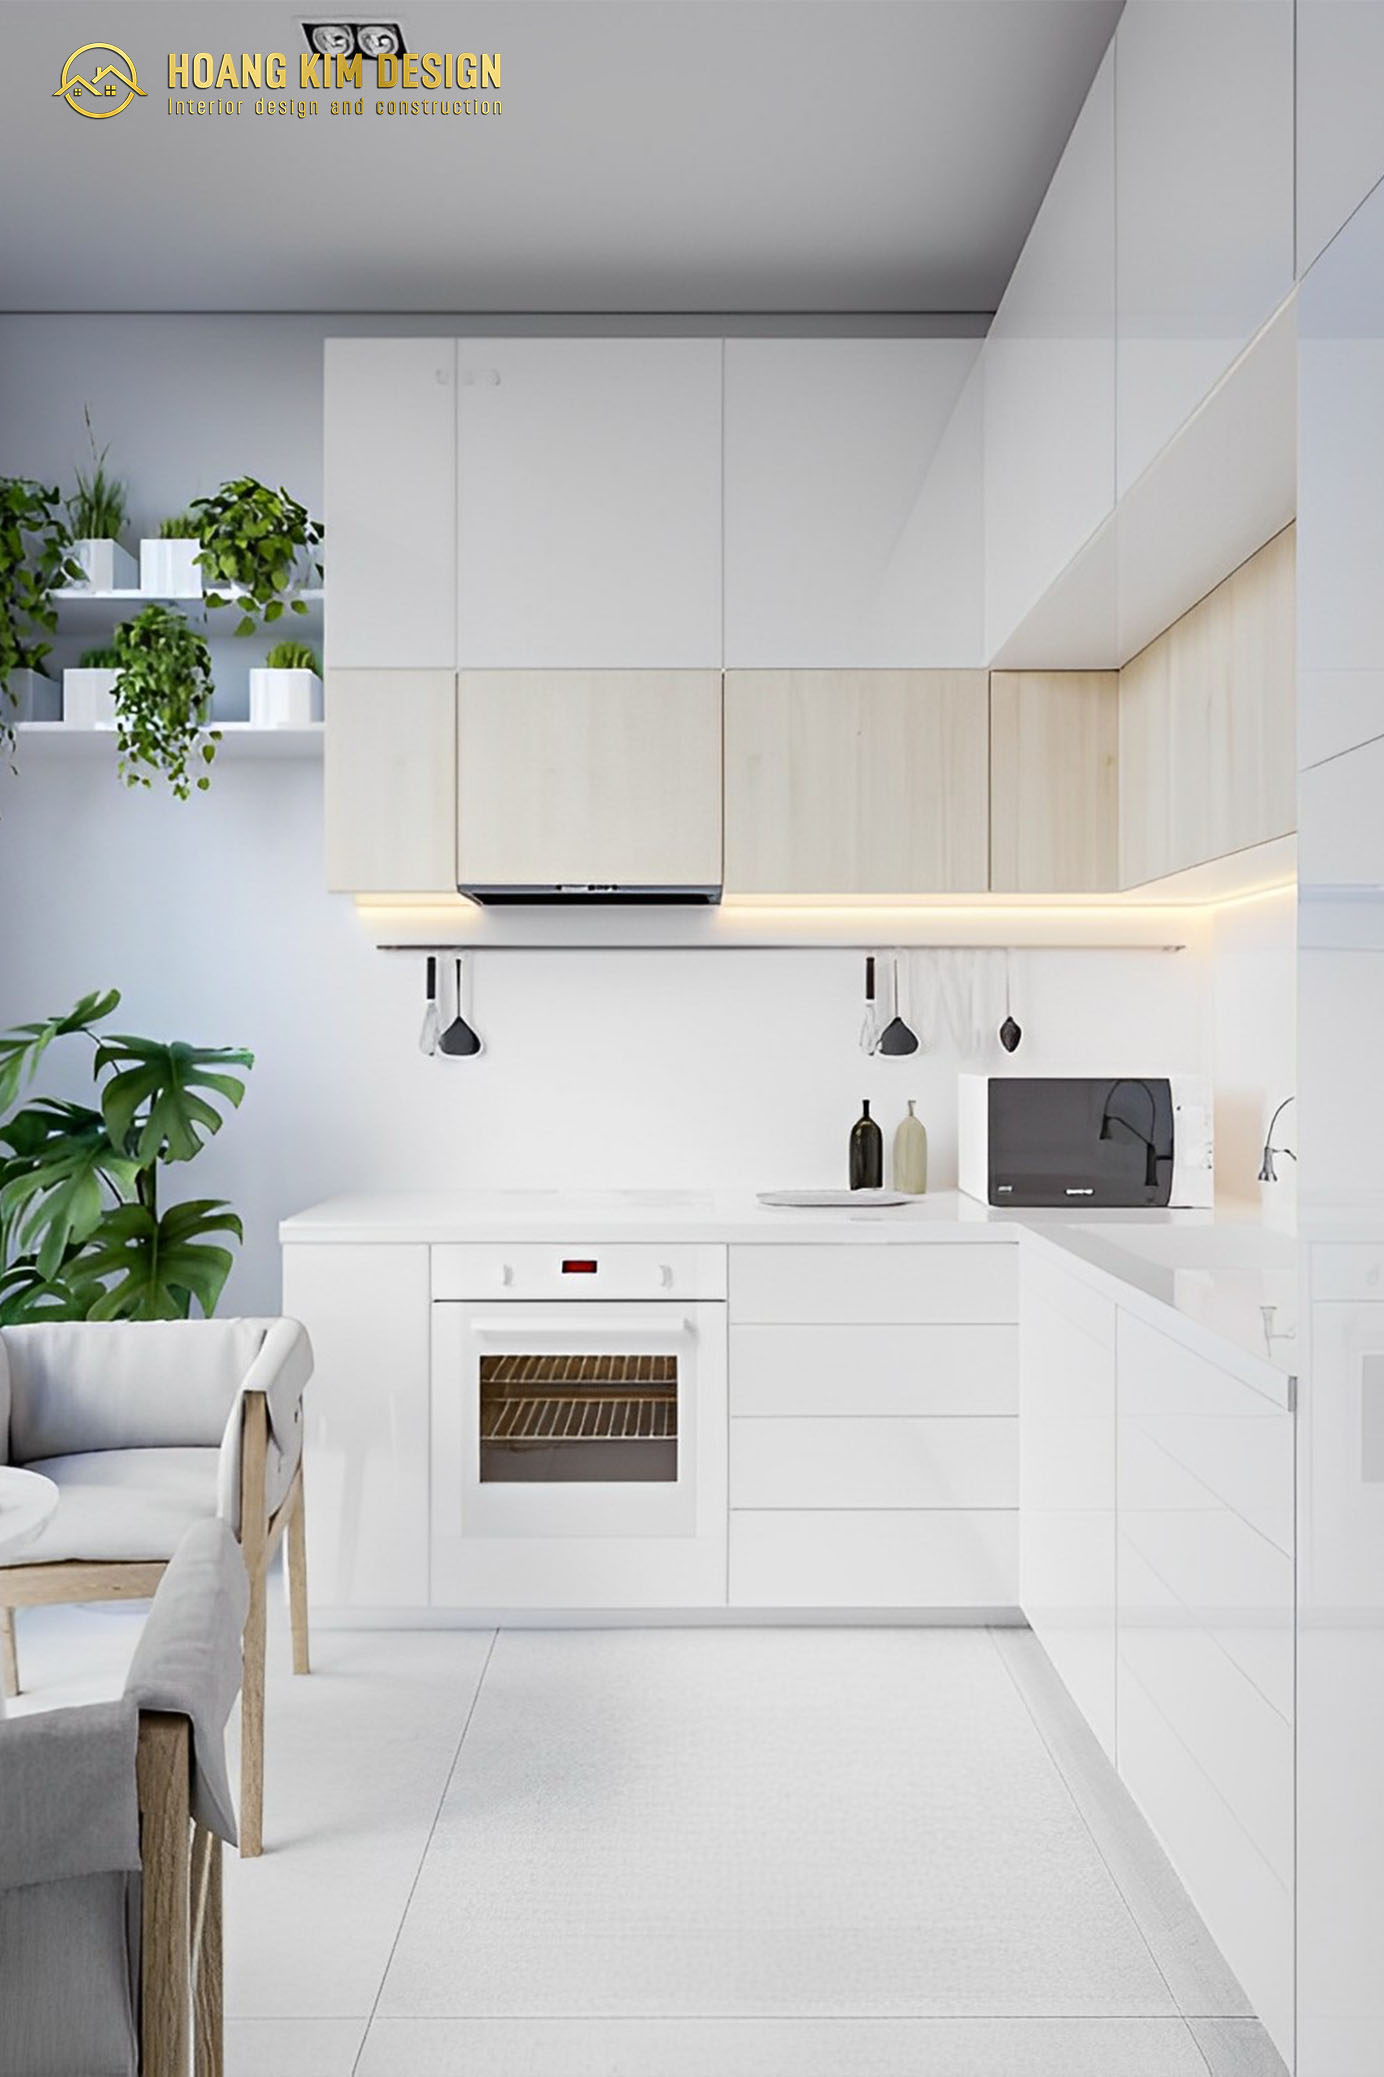 Khi thiết kế phòng bếp với phong cách tối giản, bạn nên lựa chọn nguồn sáng hợp lý